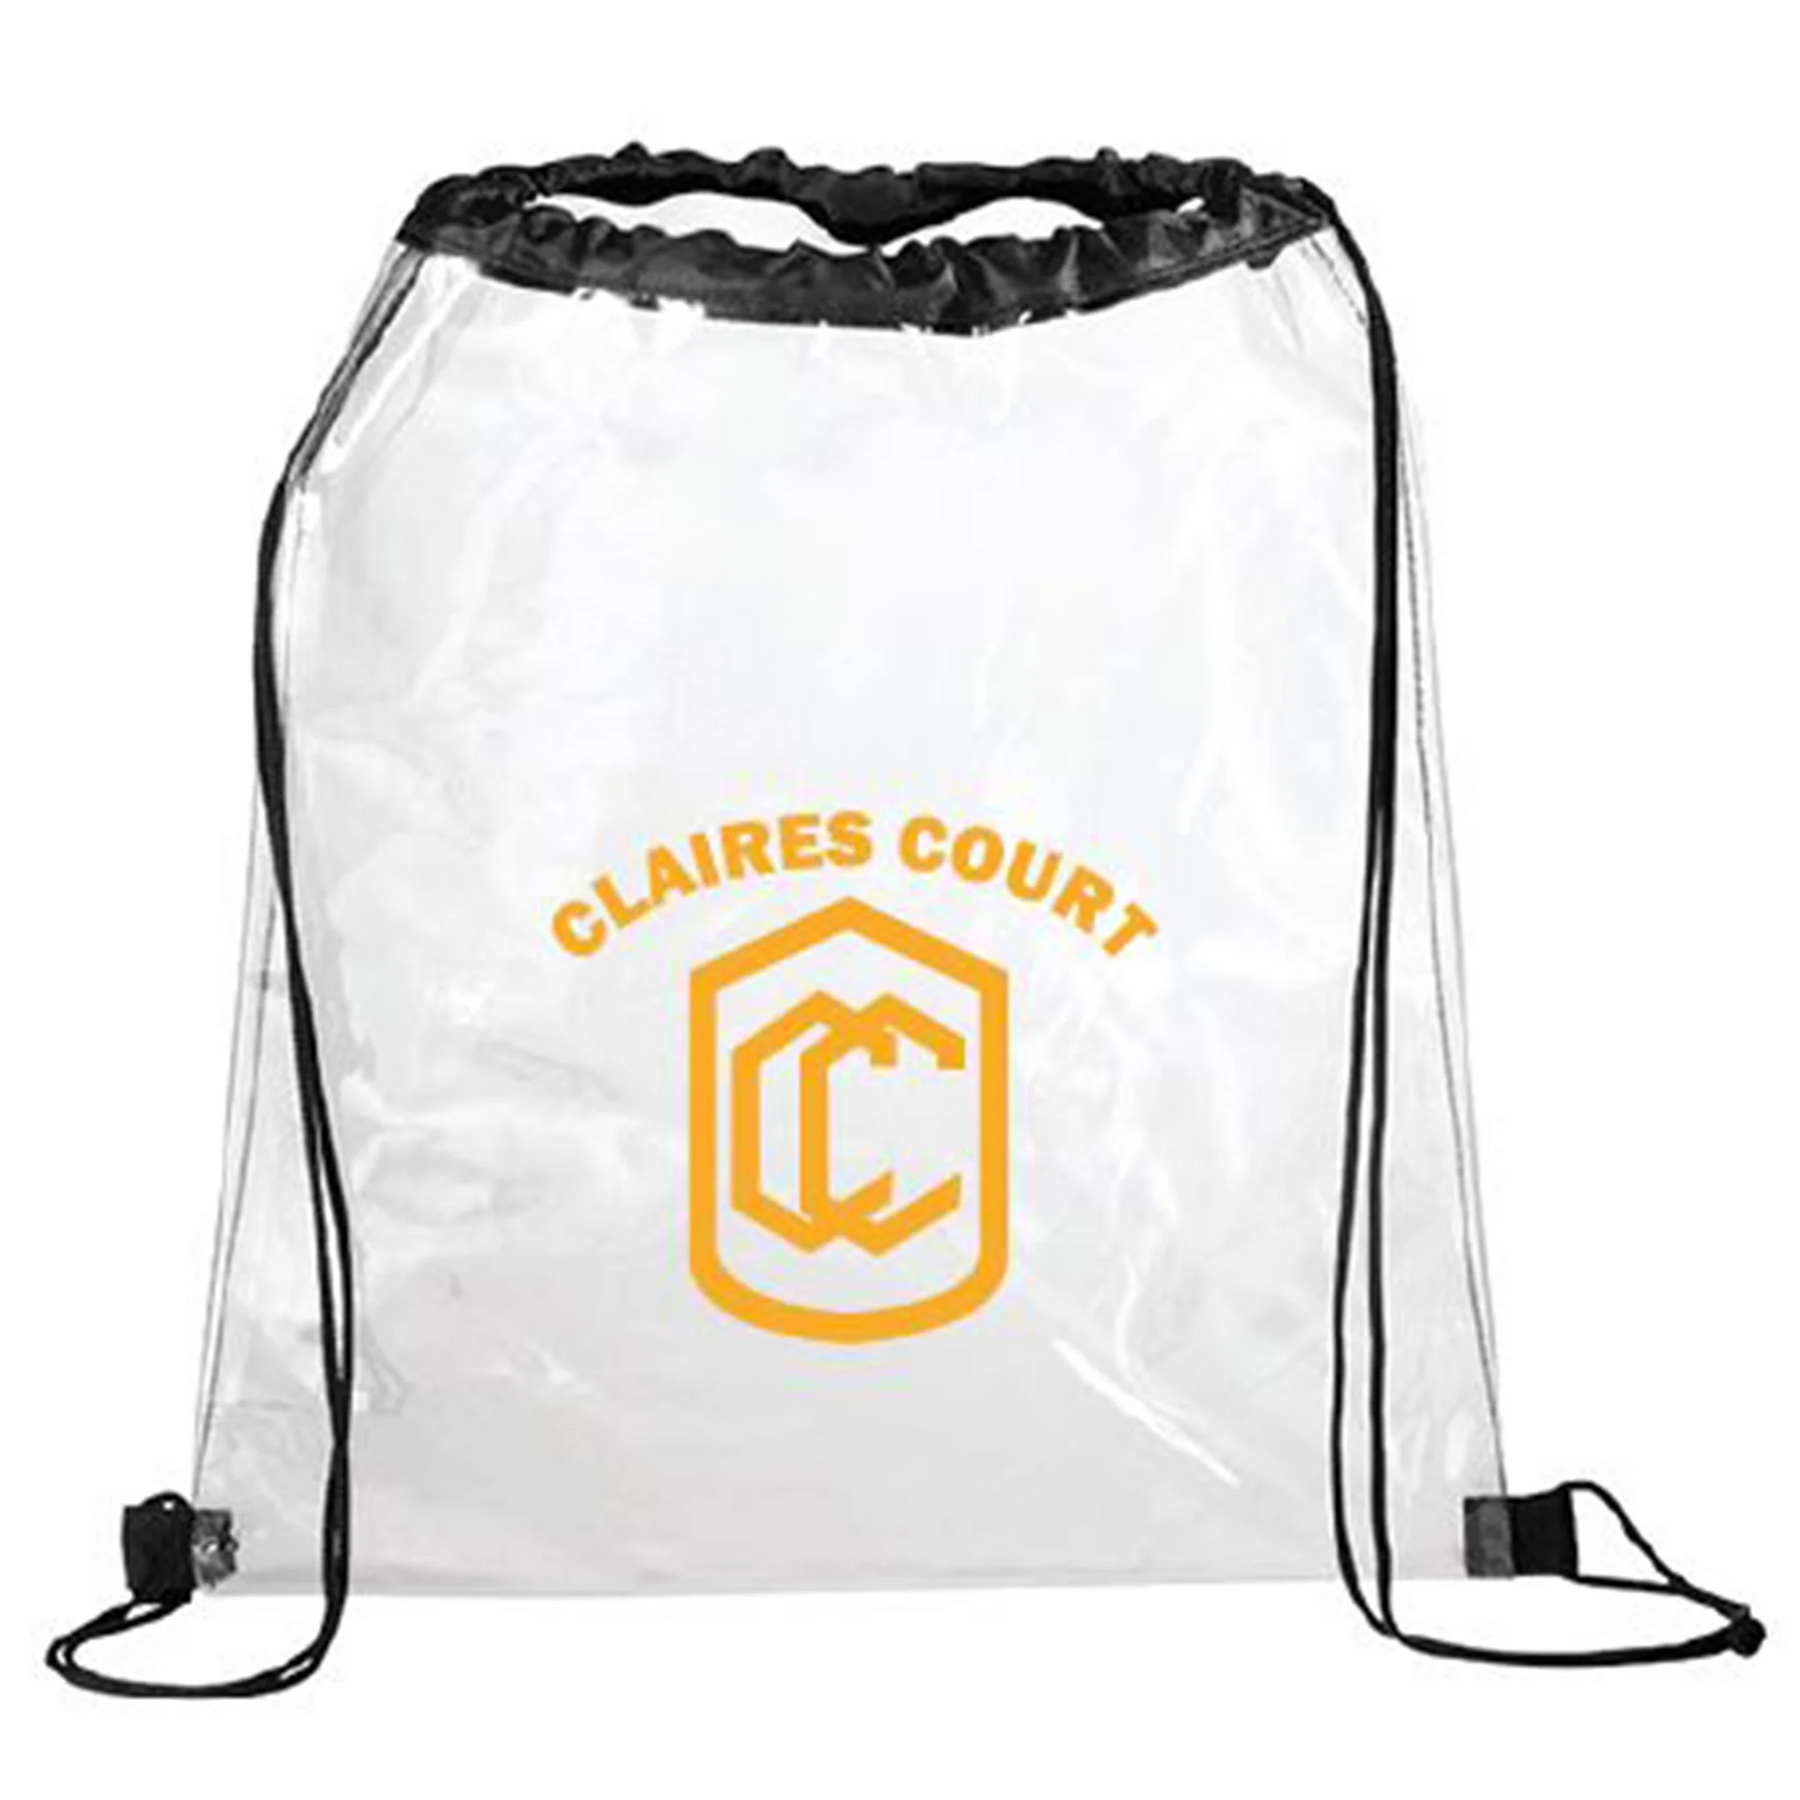 Claires Court Swim Bag